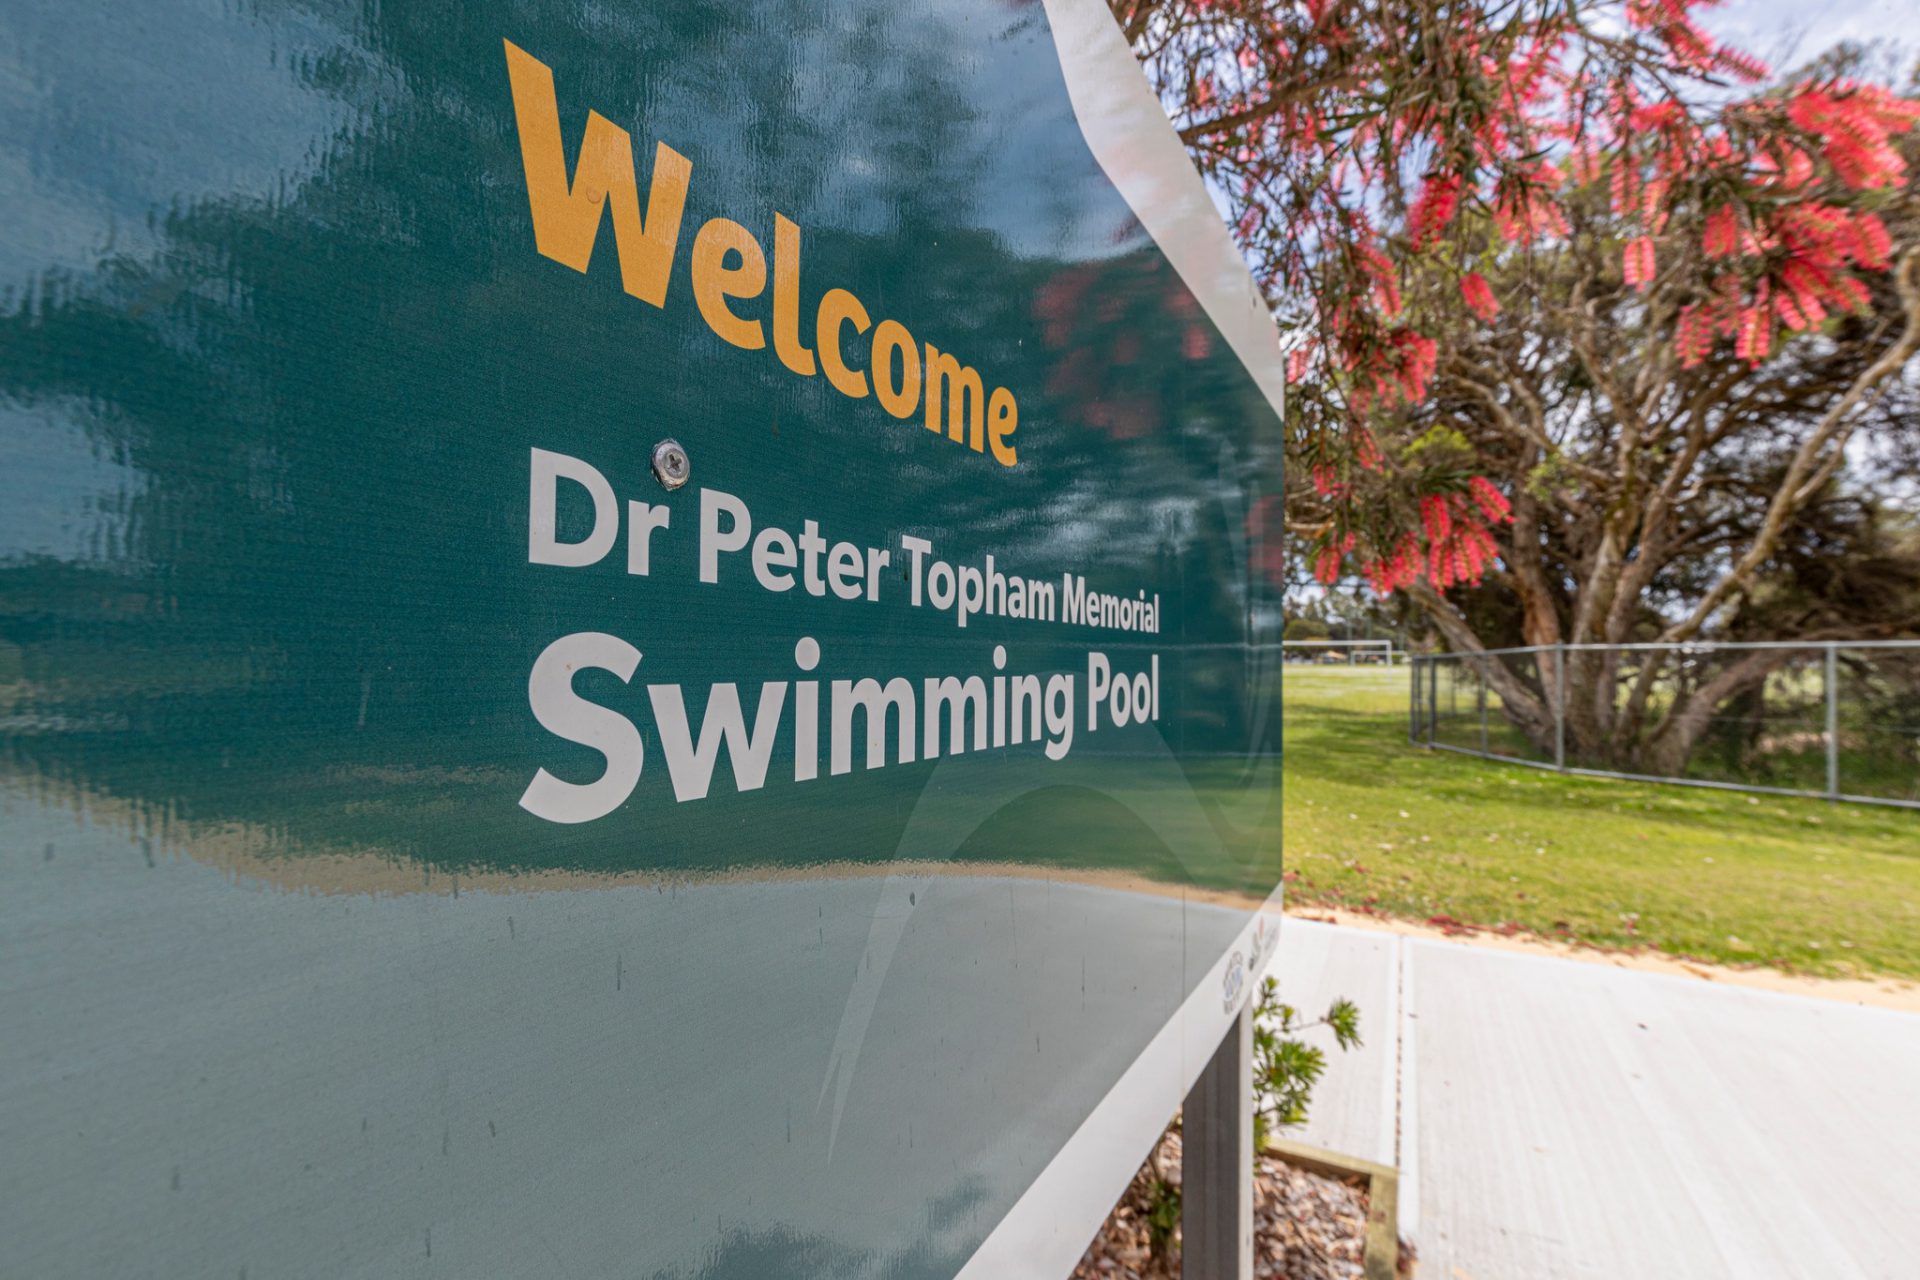 Dr-Peter-Topham-Memorial-Swimming-Pool-1-1920x1280.jpg